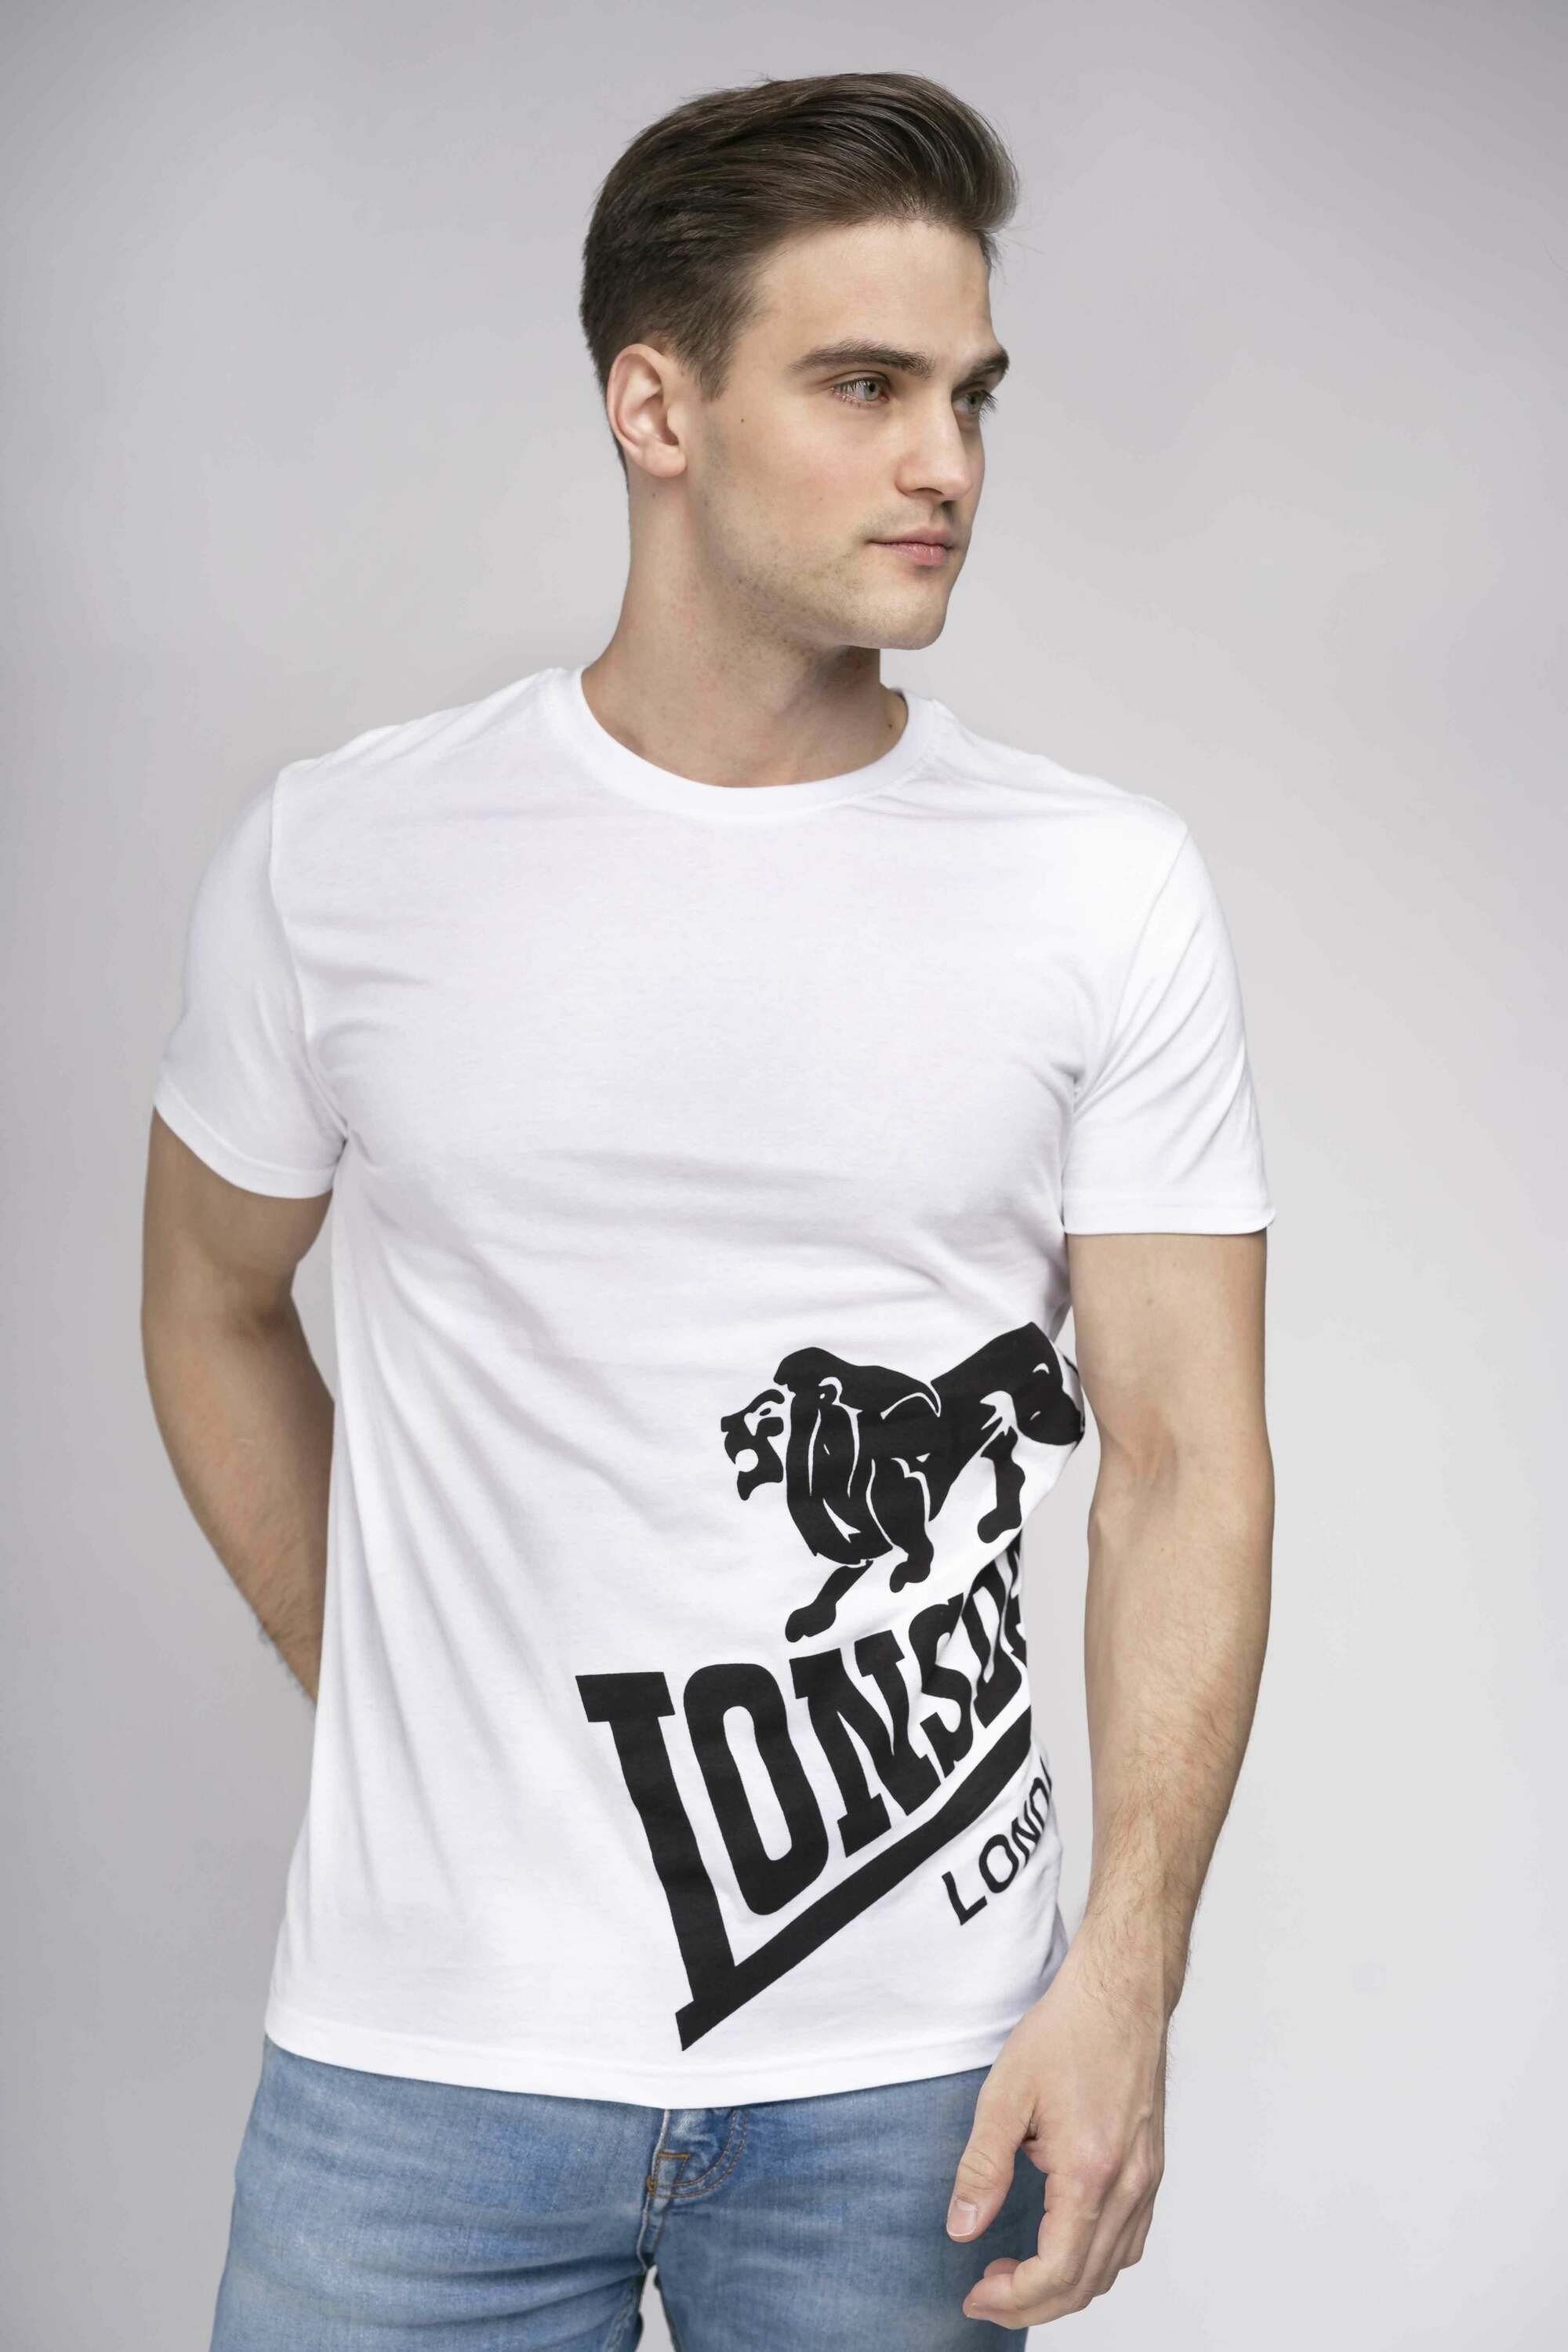 Lonsdale T-Shirt DEREHAM White